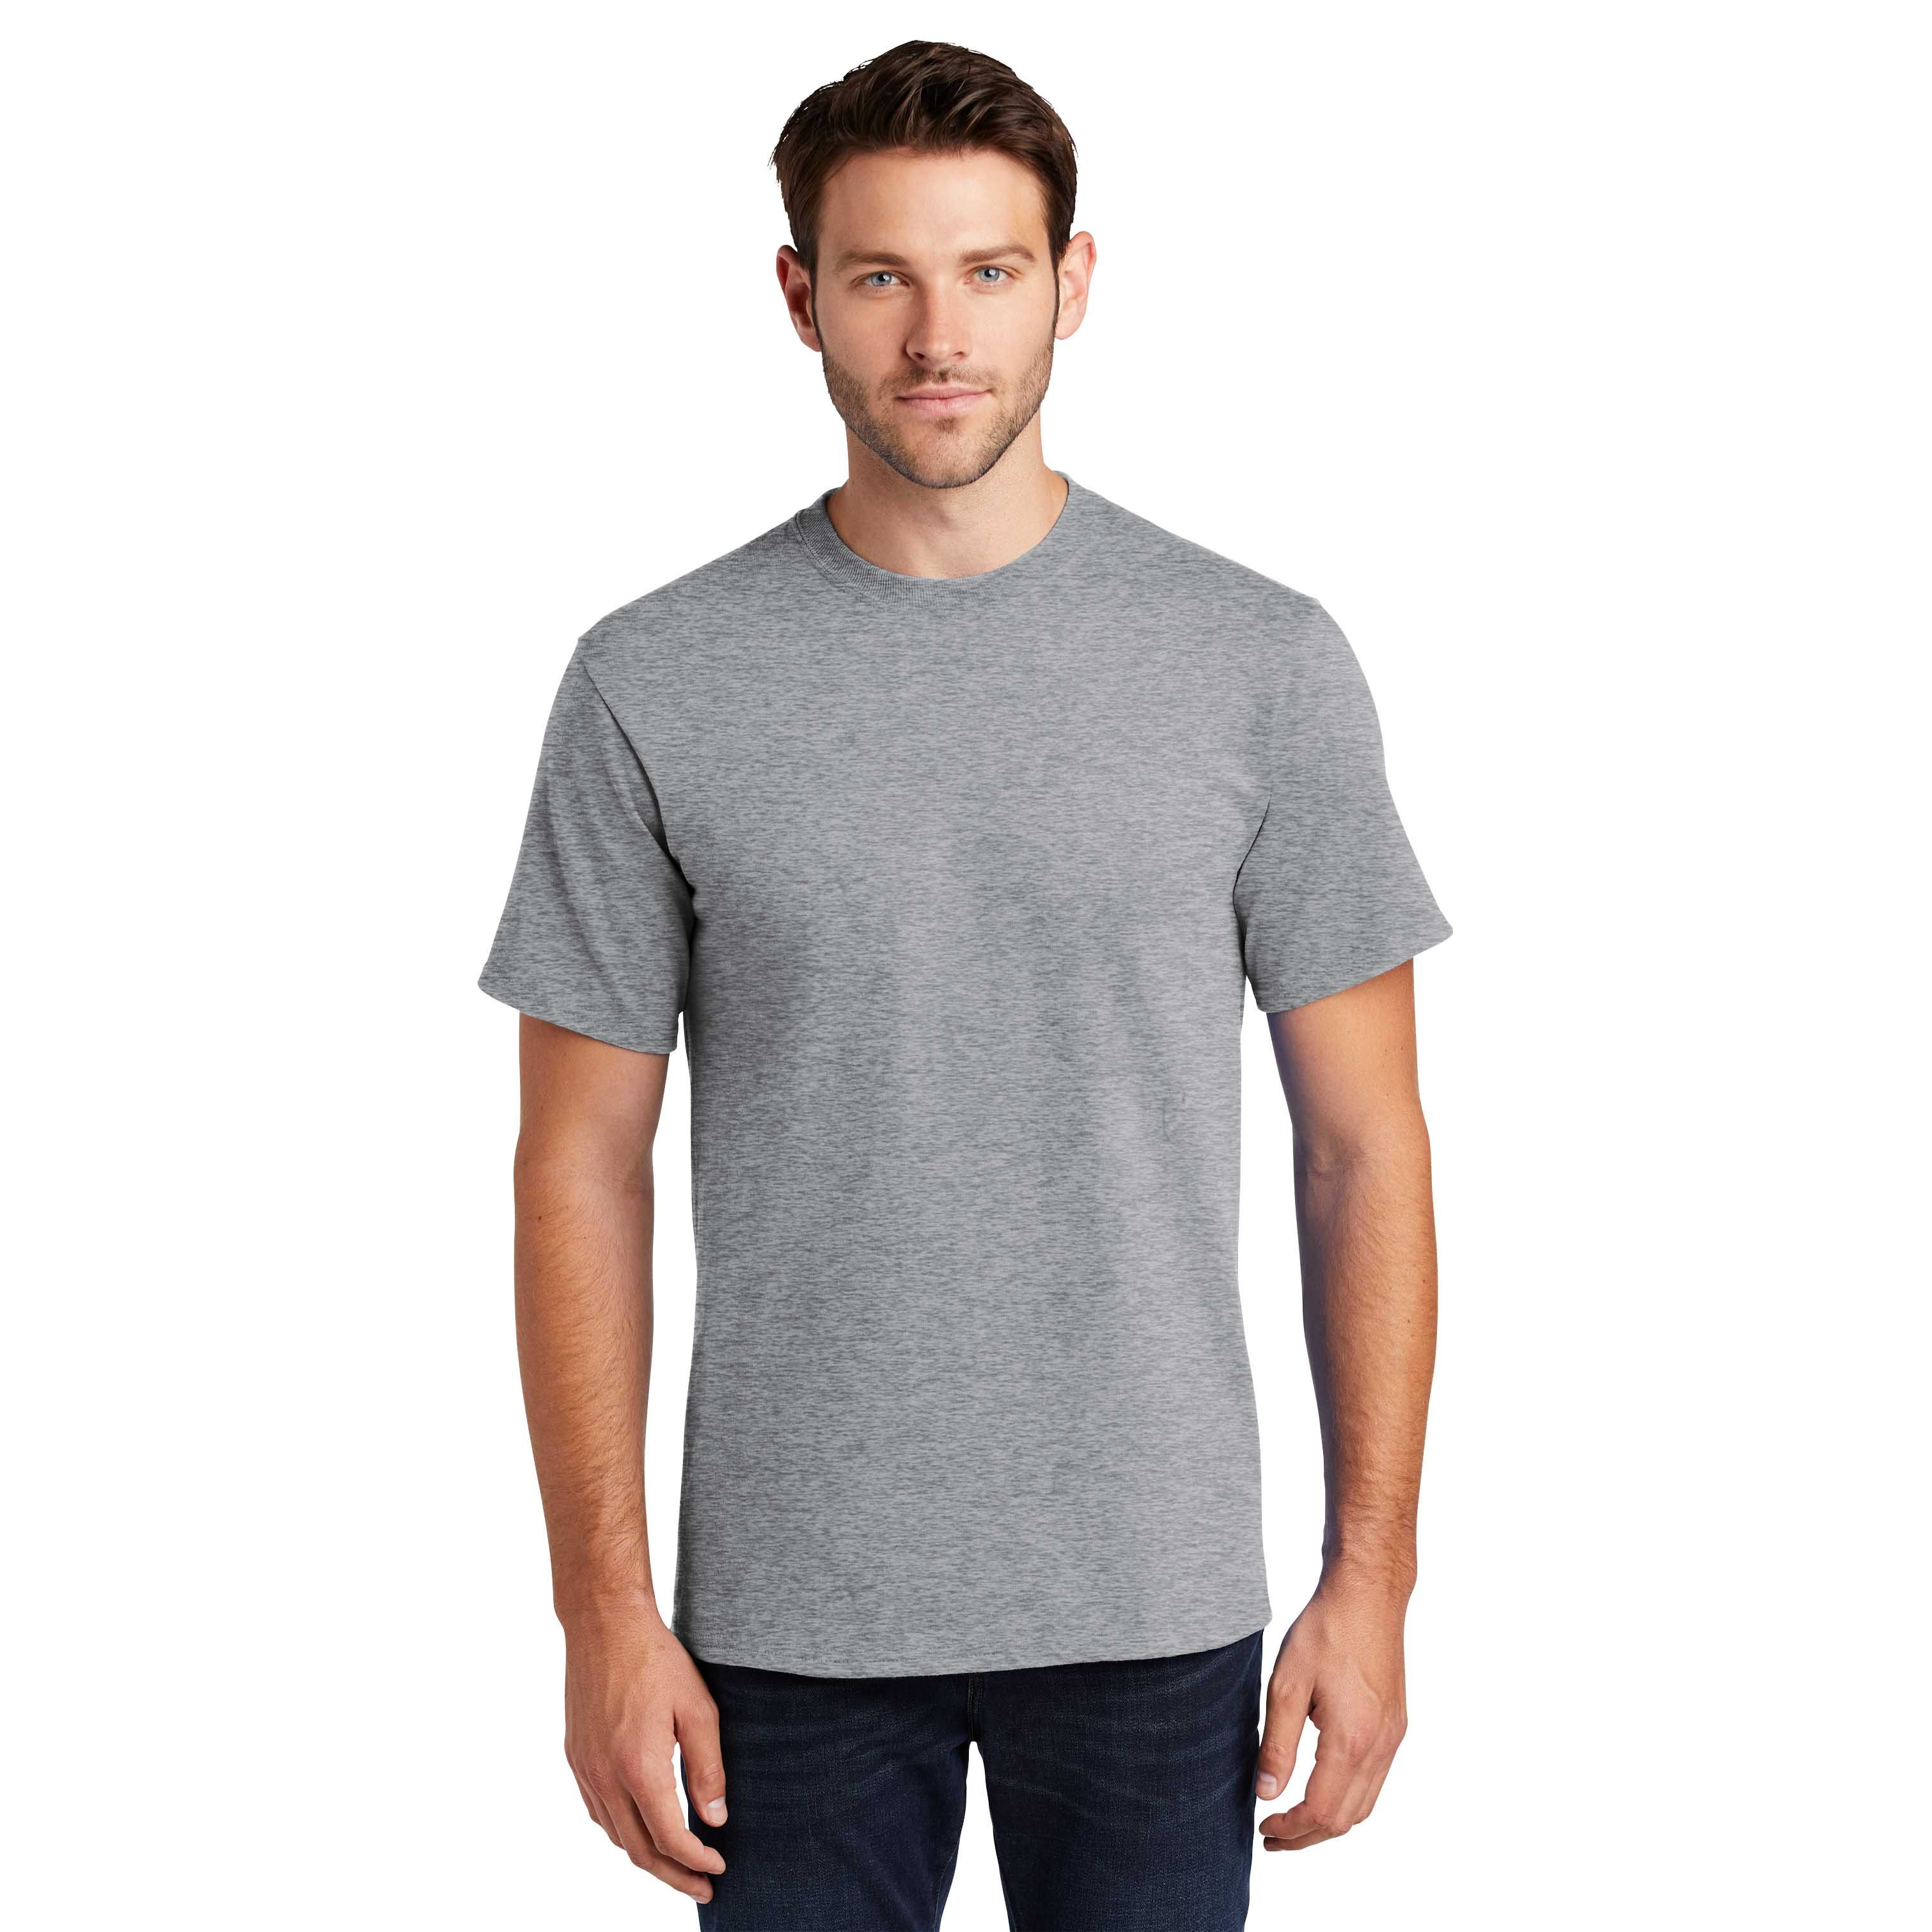 Work Uniform Polo Shirt - Short Sleeve - Jay - Black - Size XL - A